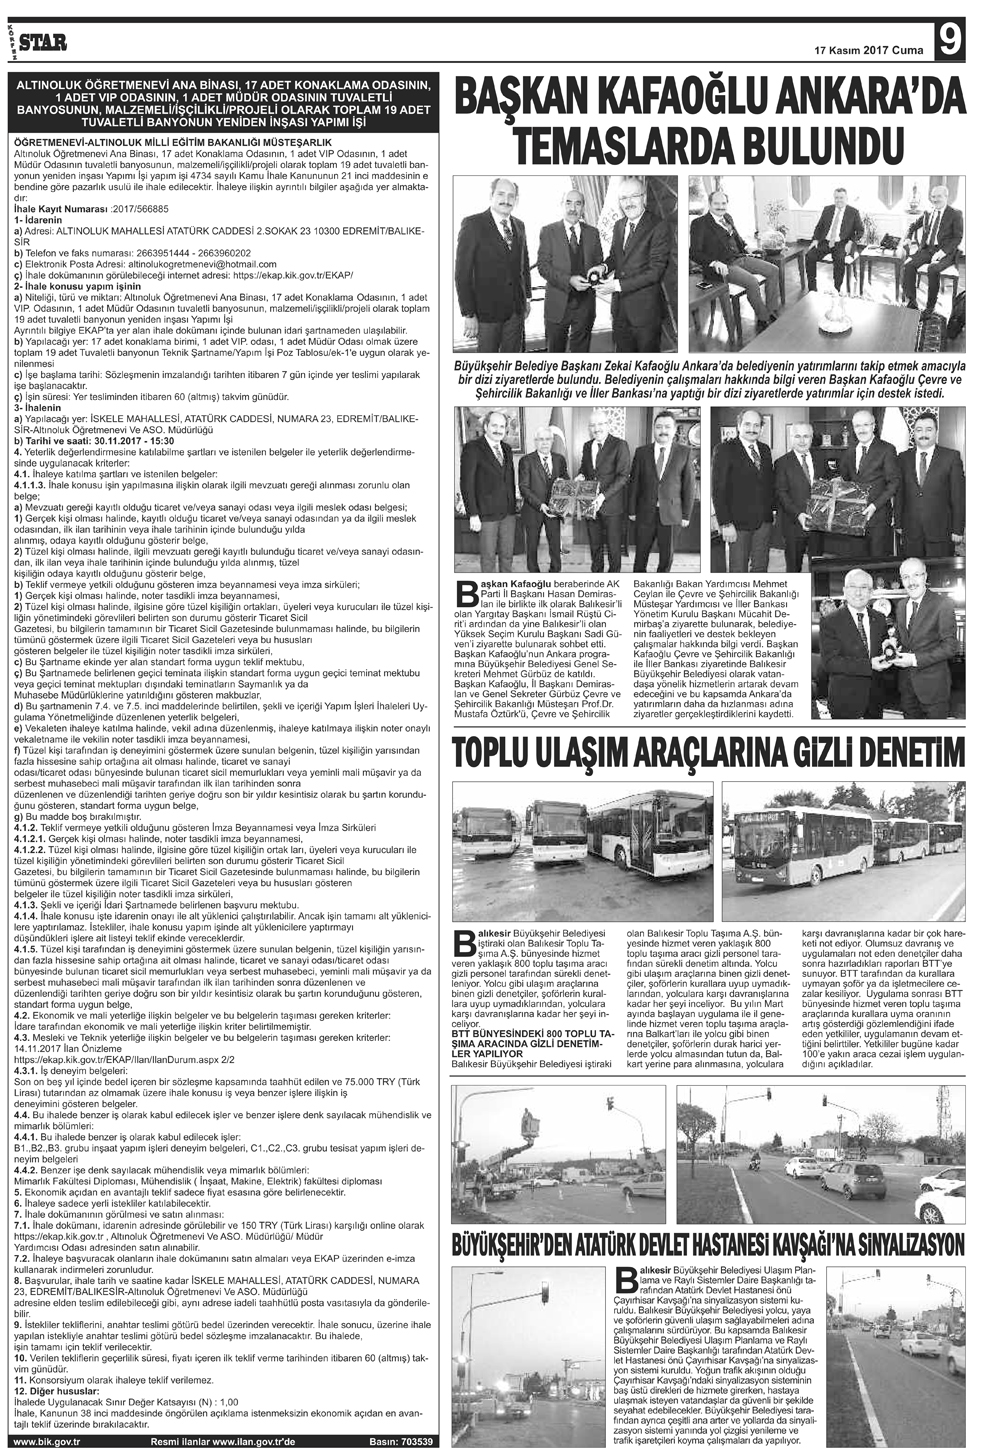 17112017-tarihli-gazetemiz-1017-11-17071719.jpg